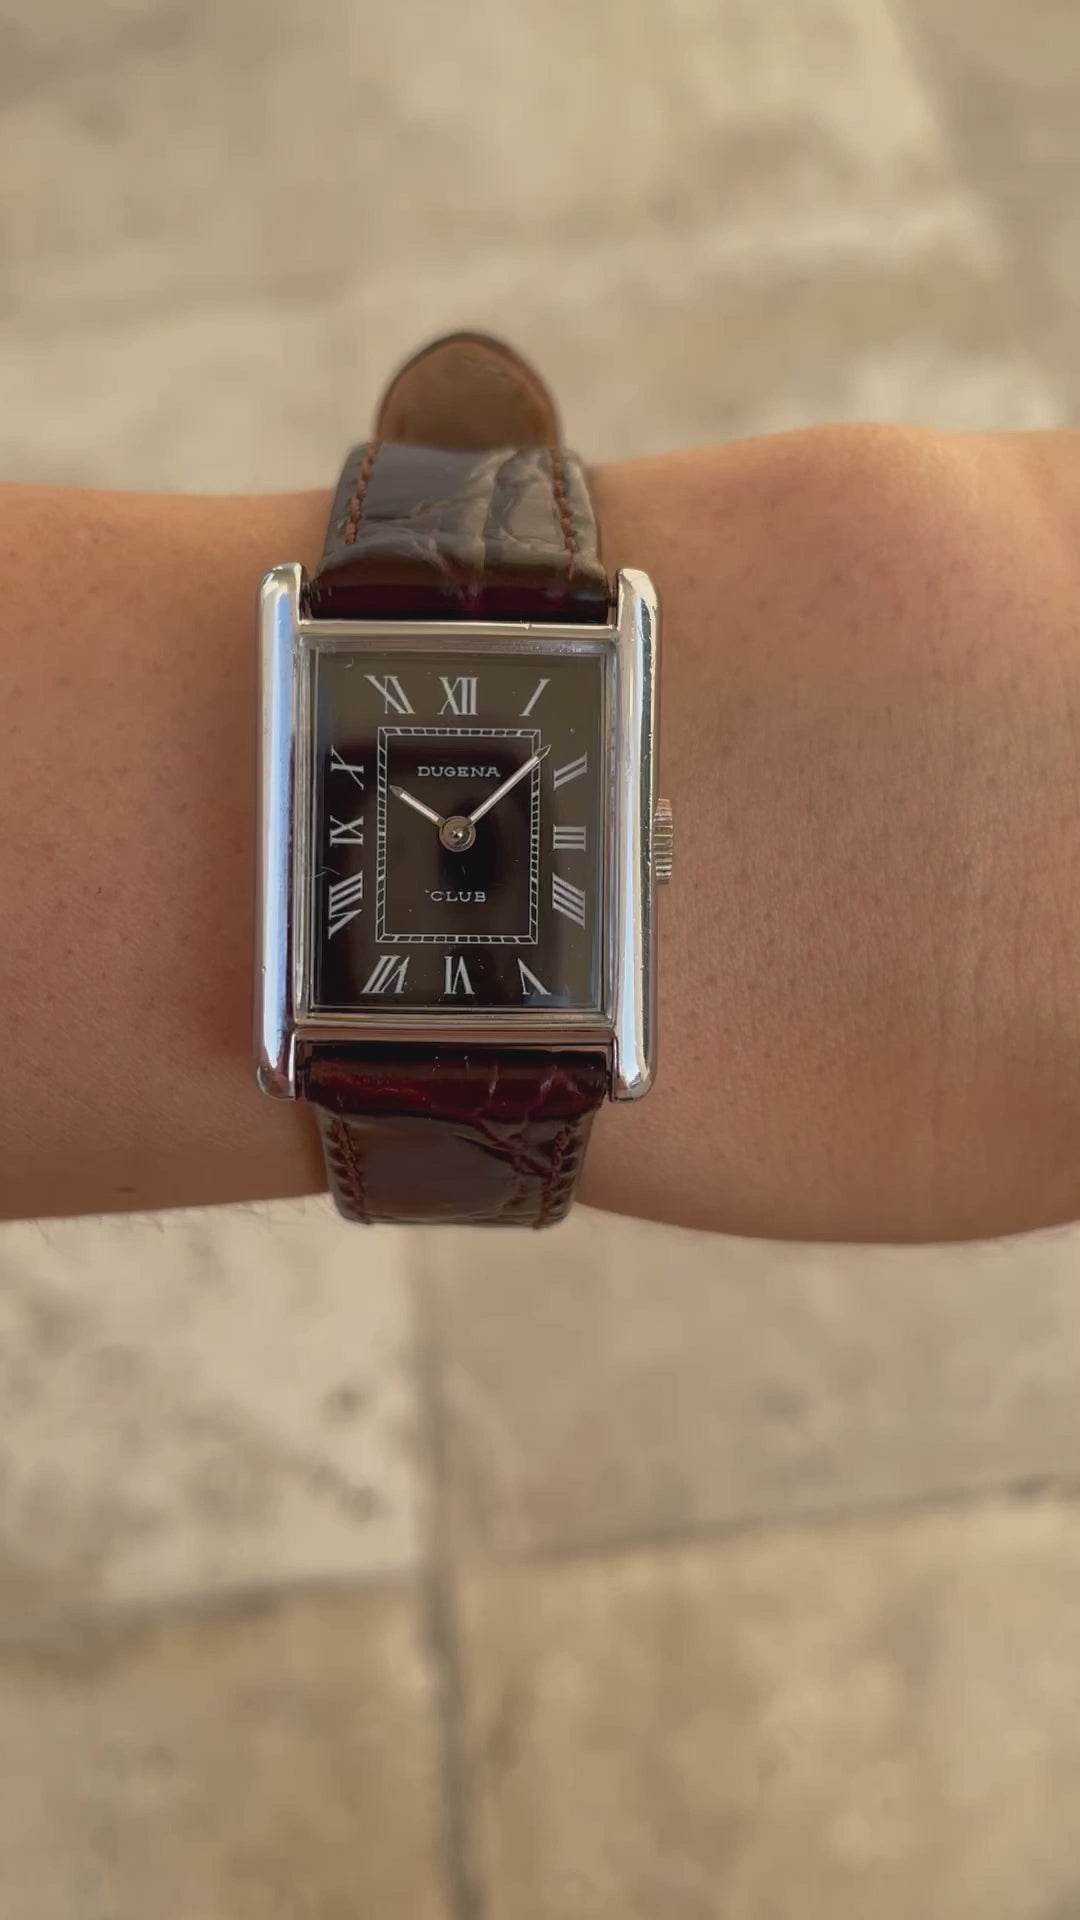 Dugena Vintage Ladies Watch: 90s Elegant Rectangular Style Roman Numerals, Wrist Shot Video